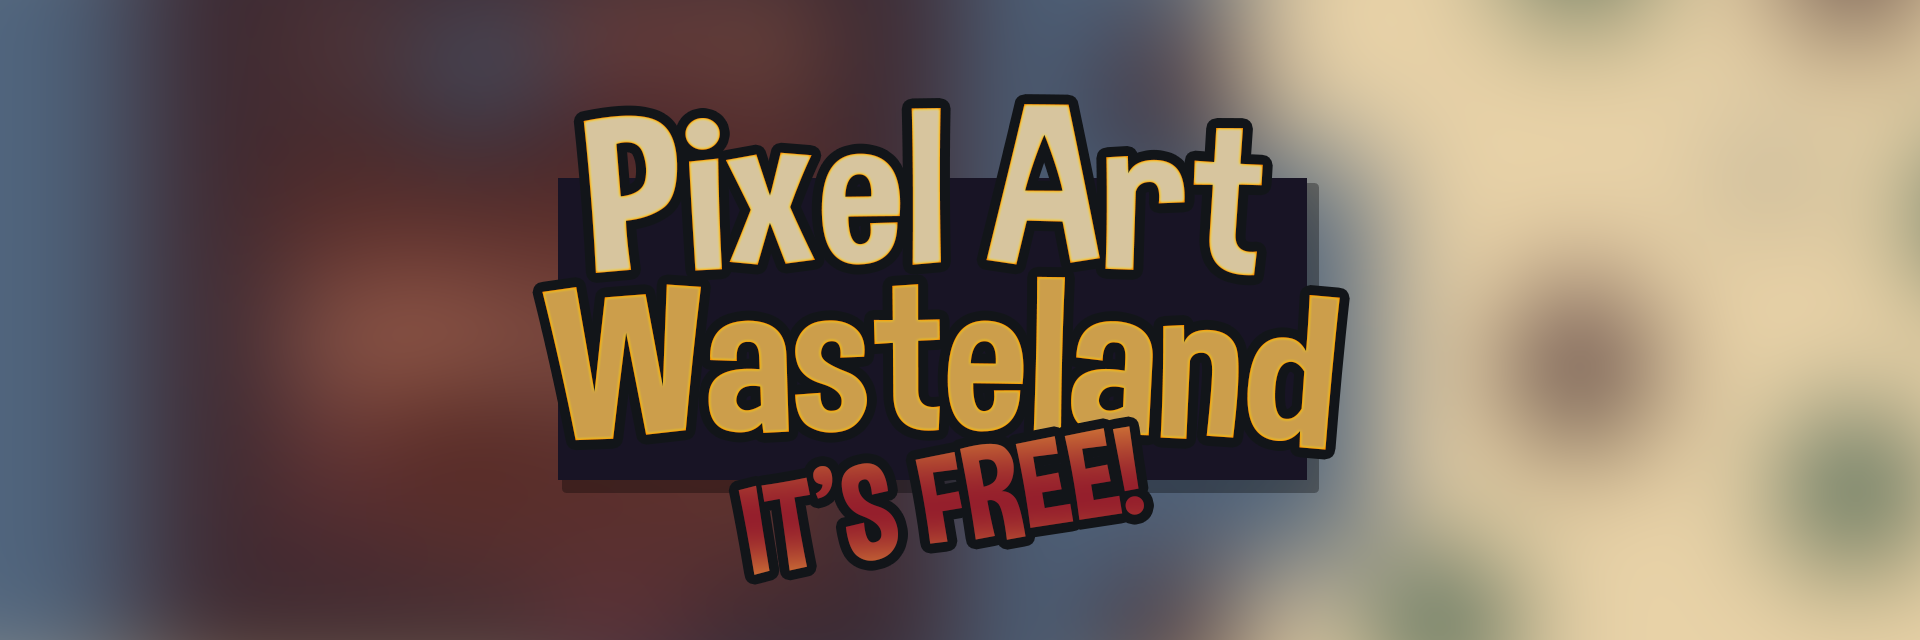 Free Pixel Art 8x8 Wasteland Asset Pack